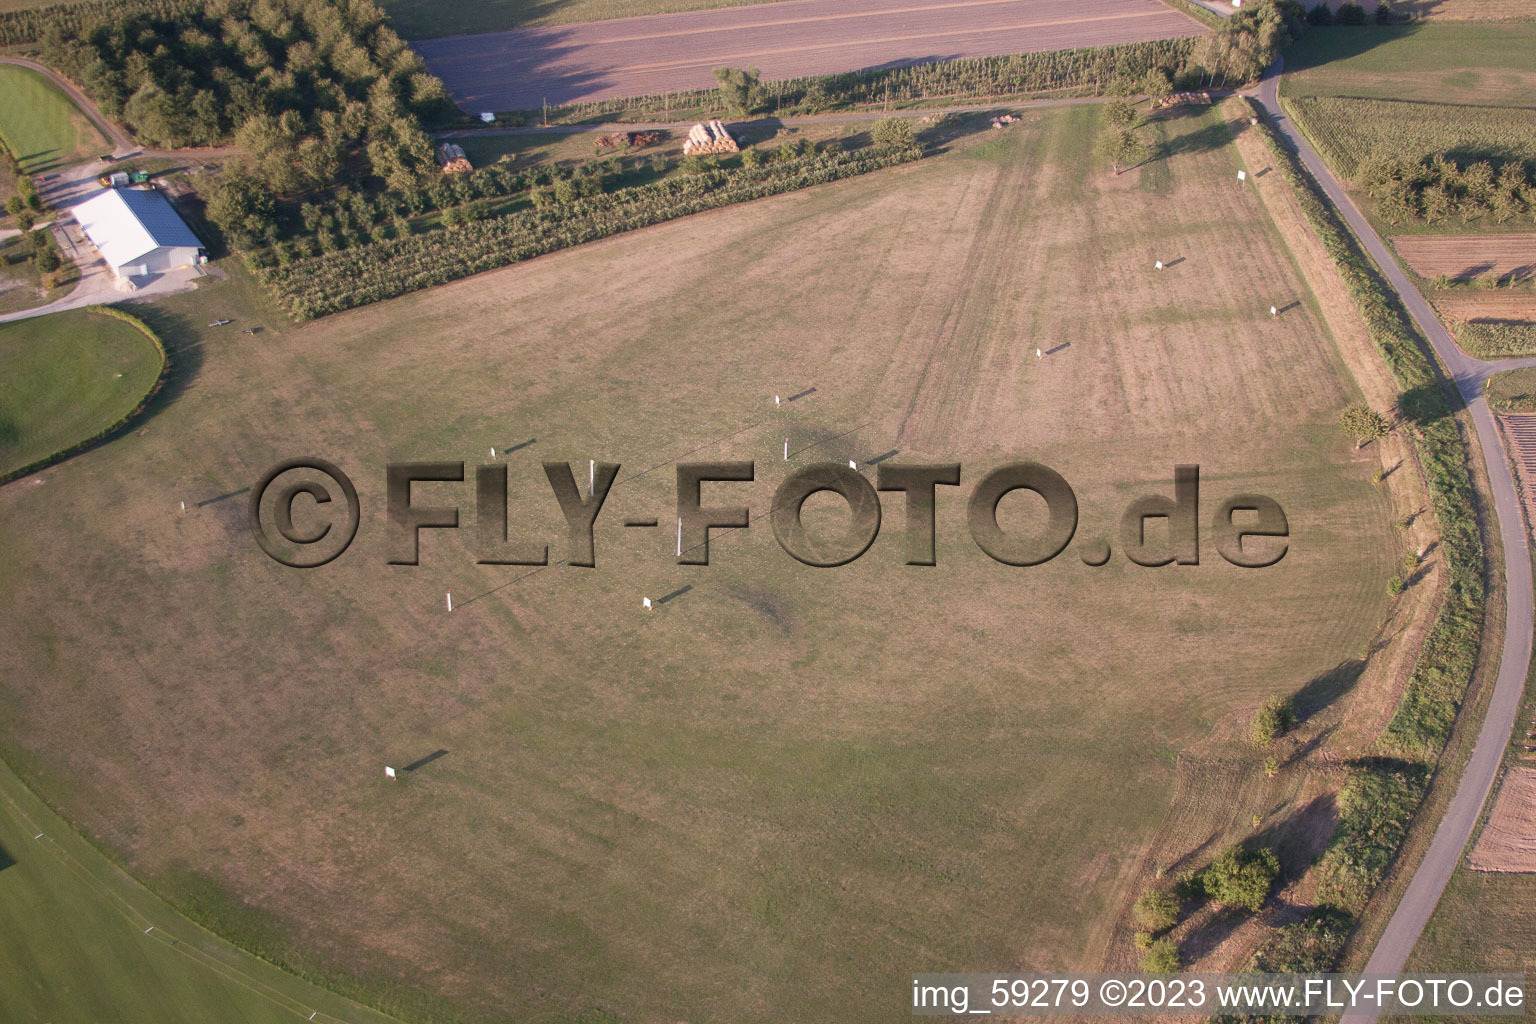 Golfclub Urloffen in Appenweier im Bundesland Baden-Württemberg, Deutschland aus der Luft betrachtet